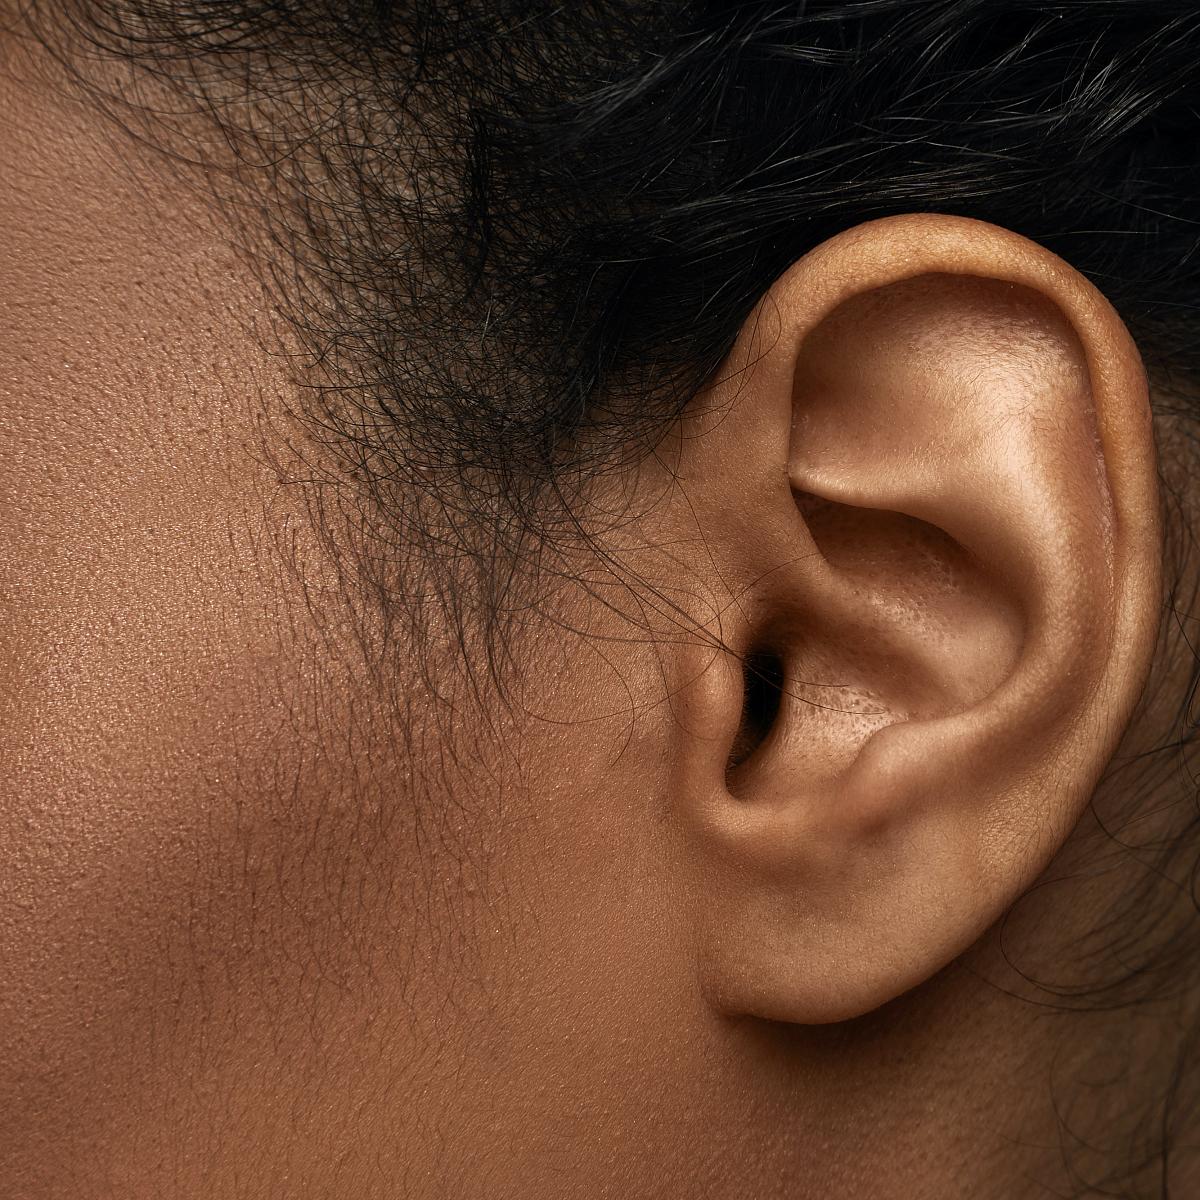 side profile of woman's ear